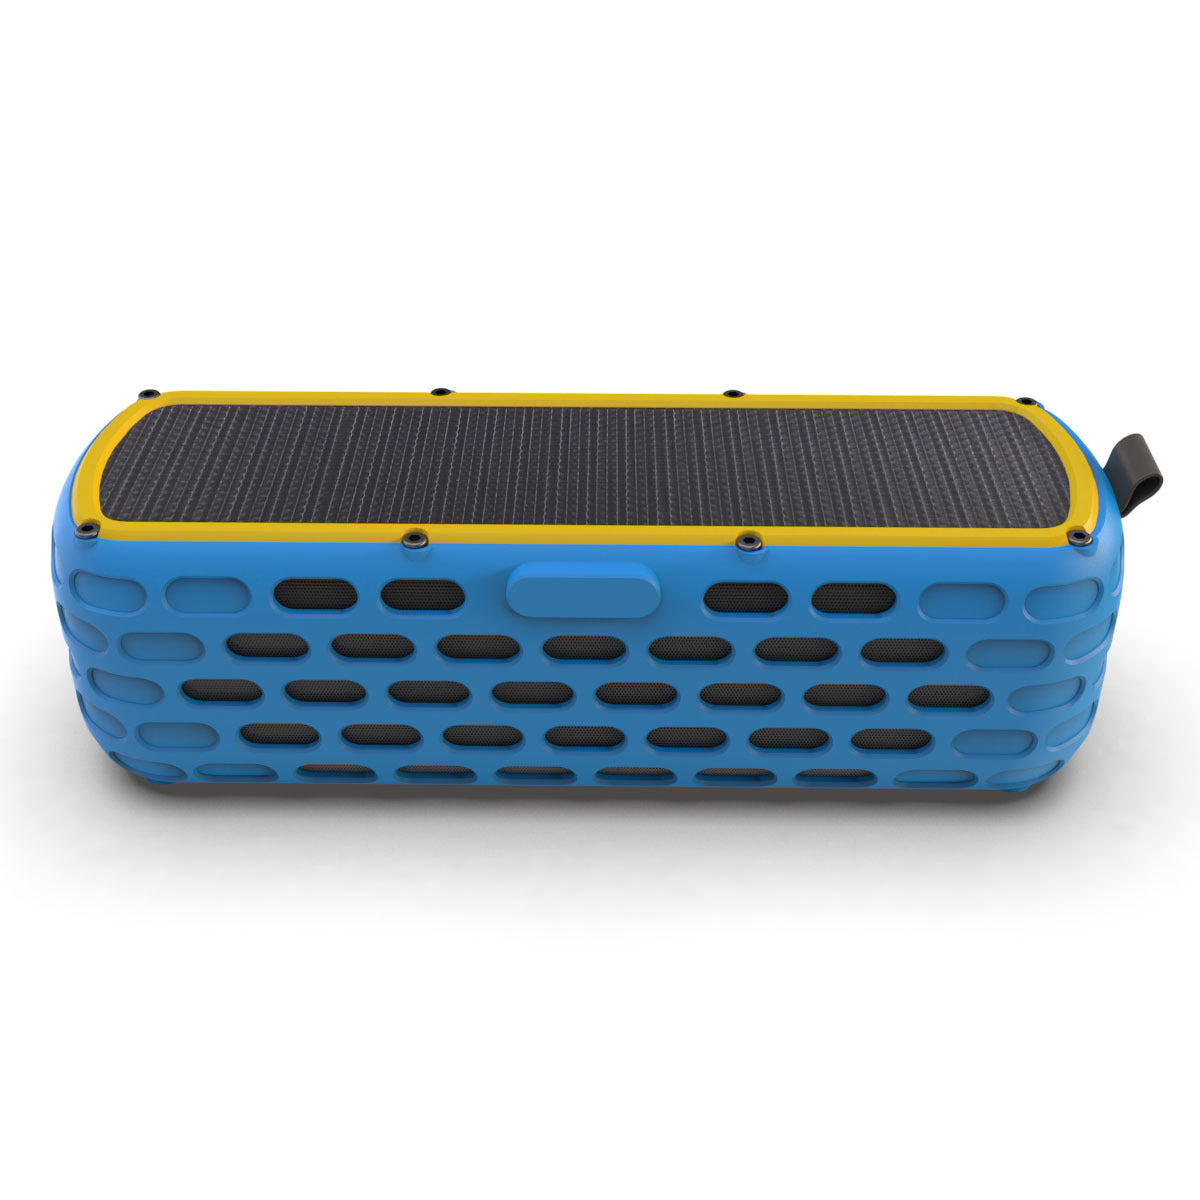 Durable Outdoor Speaker - Shockproof and Waterproof